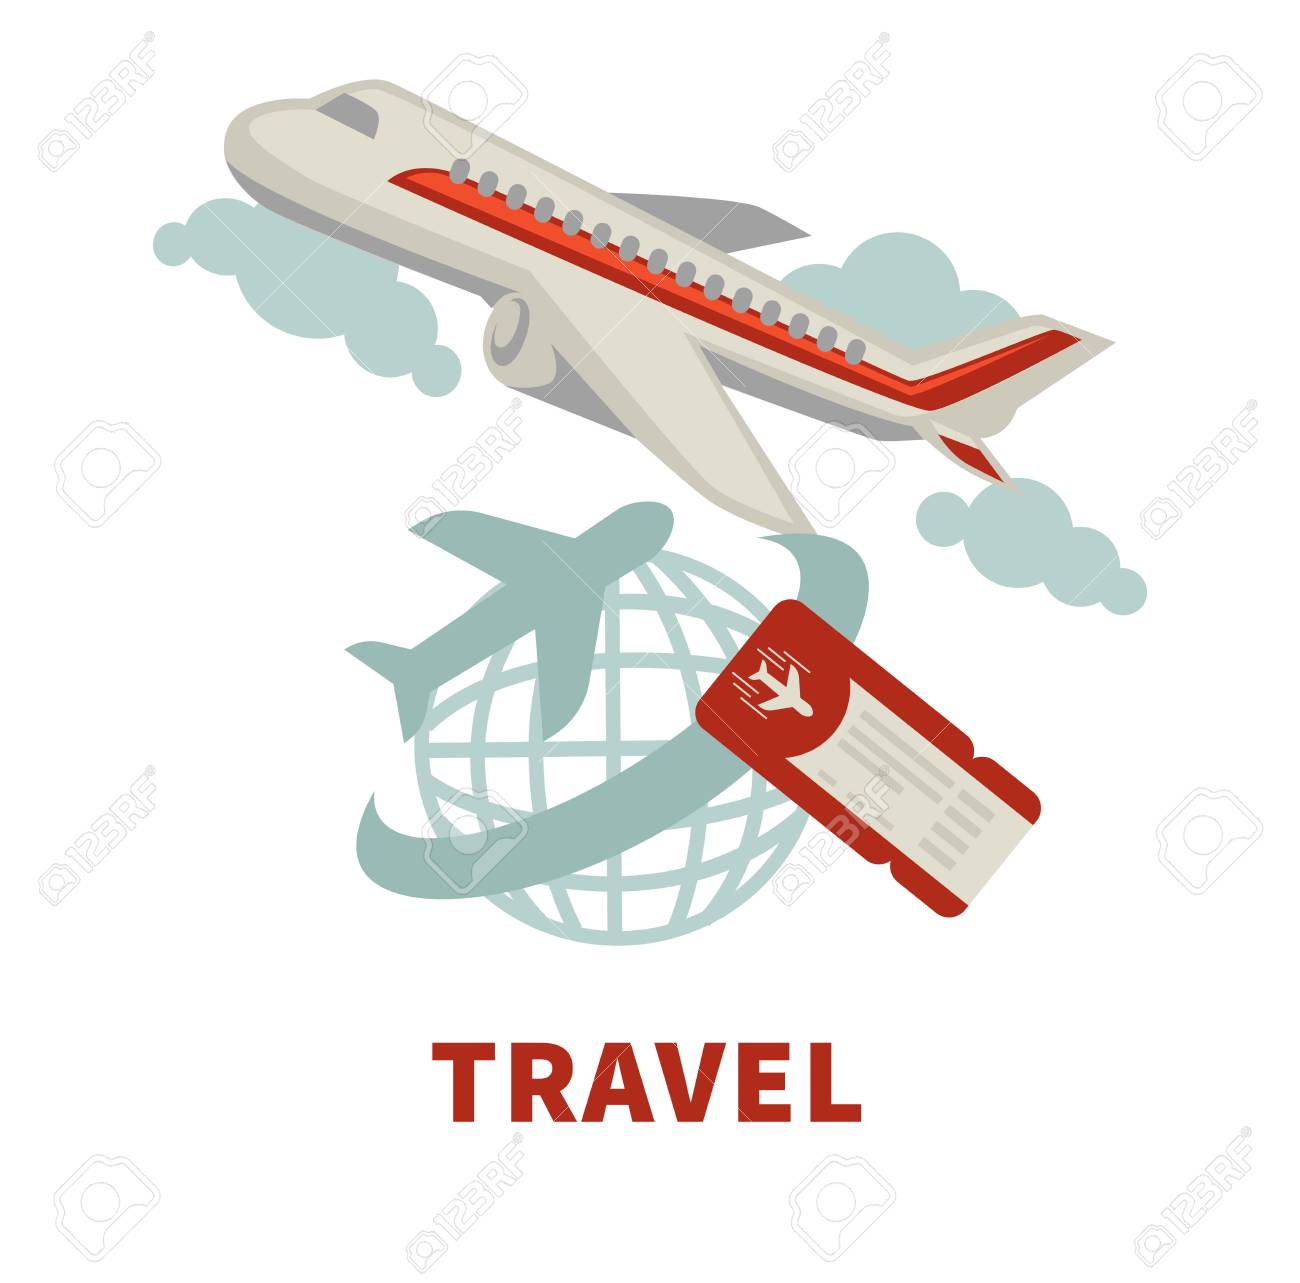 Agencia de viajes o aerolínea